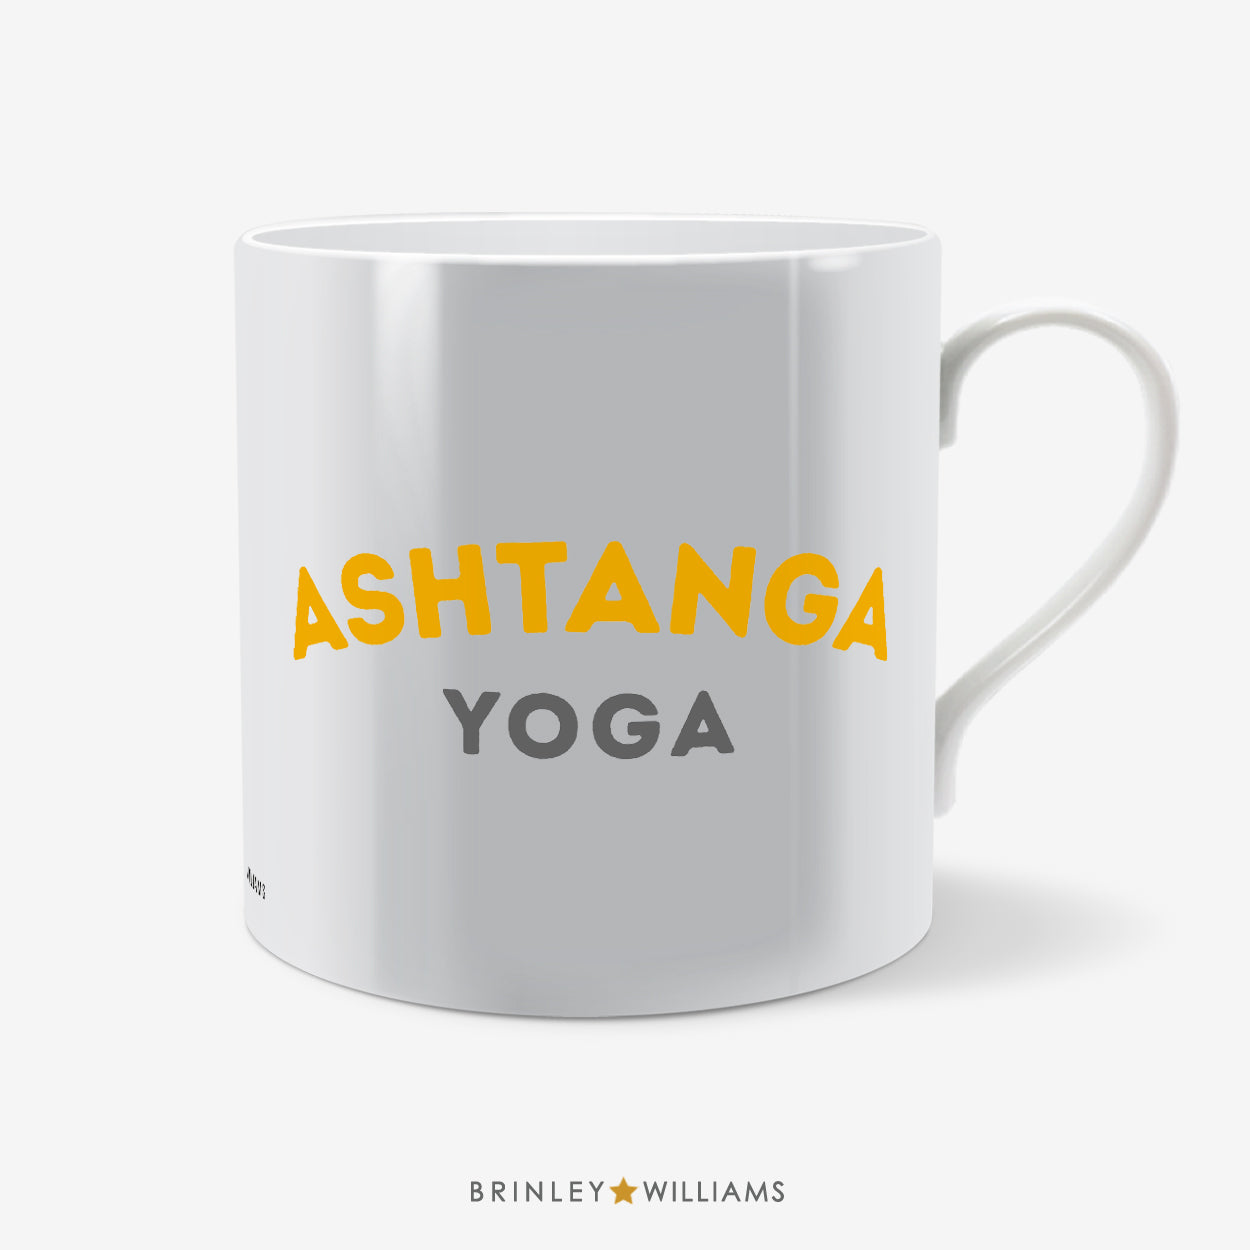 Ashtanga Yoga Mug - Yellow